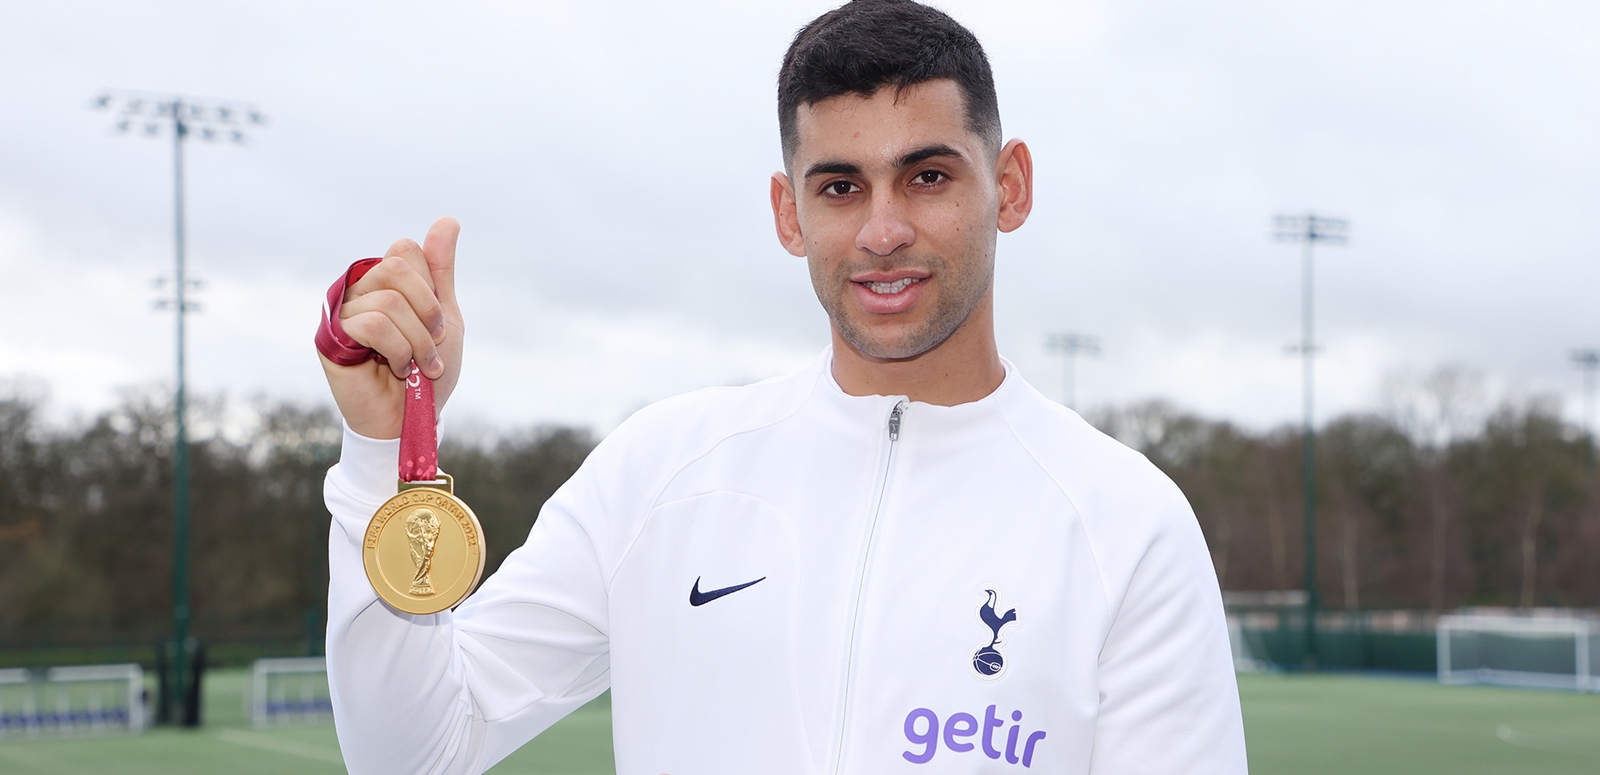 El Cuti llevó la medalla de campeón al predio de entrenamiento del Tottenham Hotspur (Foto: Spurs Oficial)